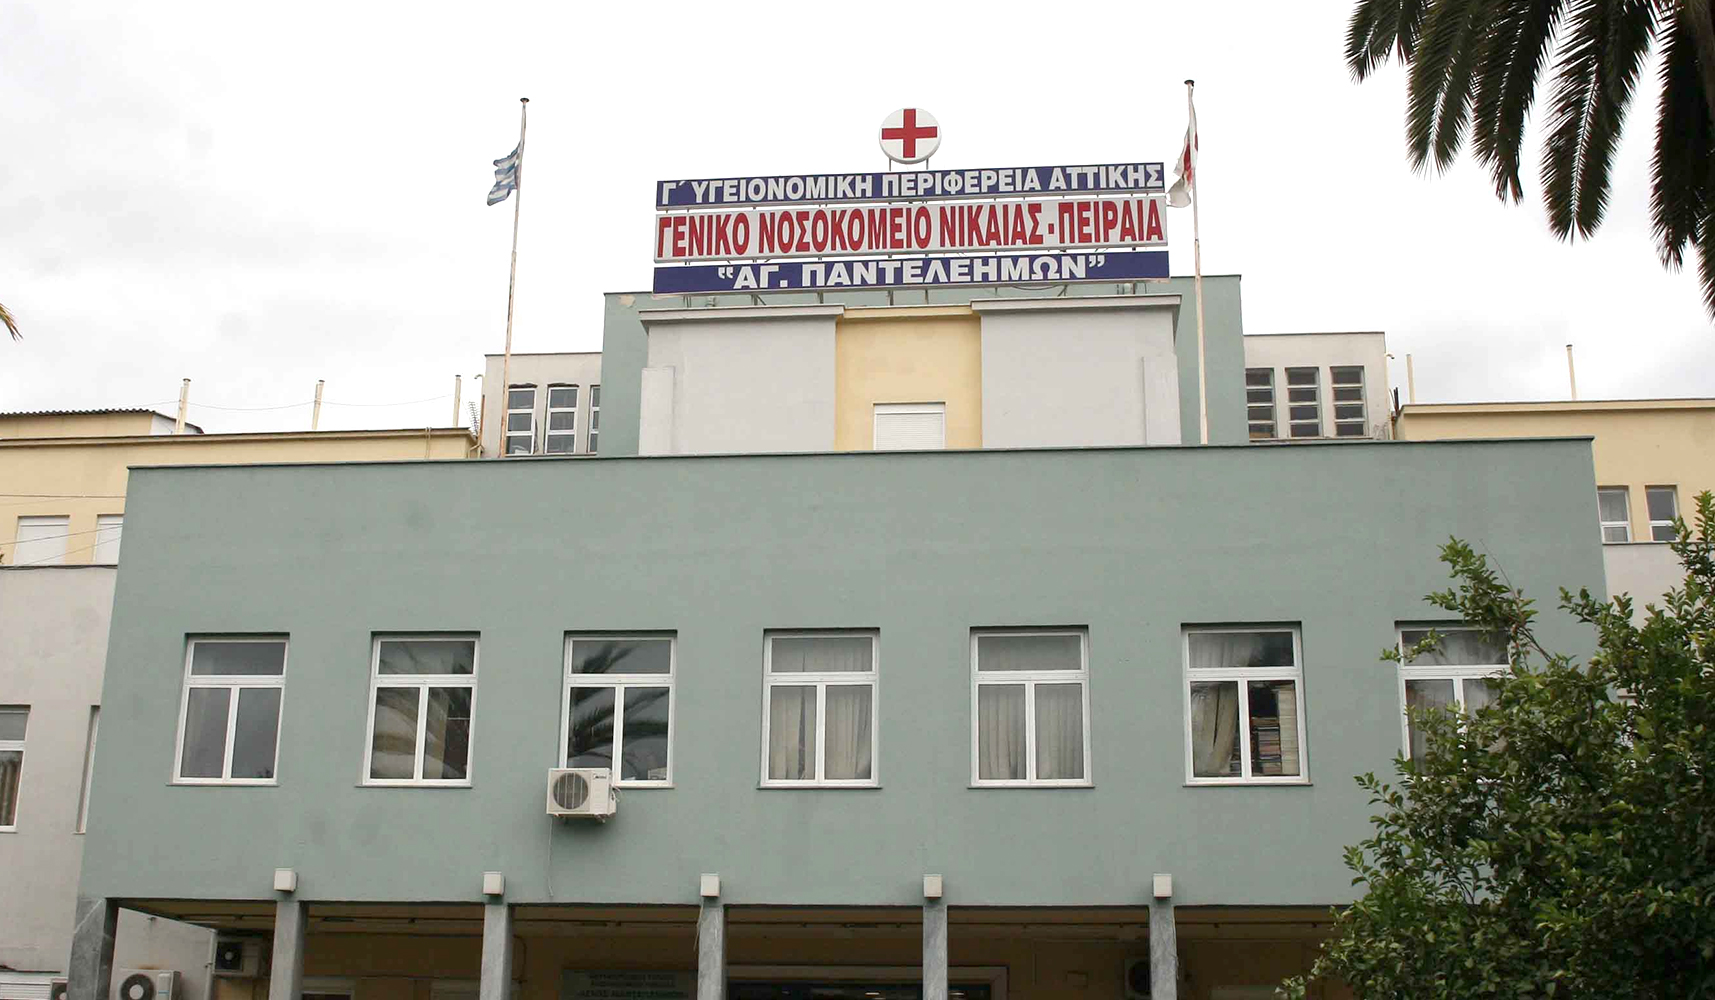 Ηπατολογικό Ιατρείο λειτουργεί στο Νοσοκομείο Νίκαιας